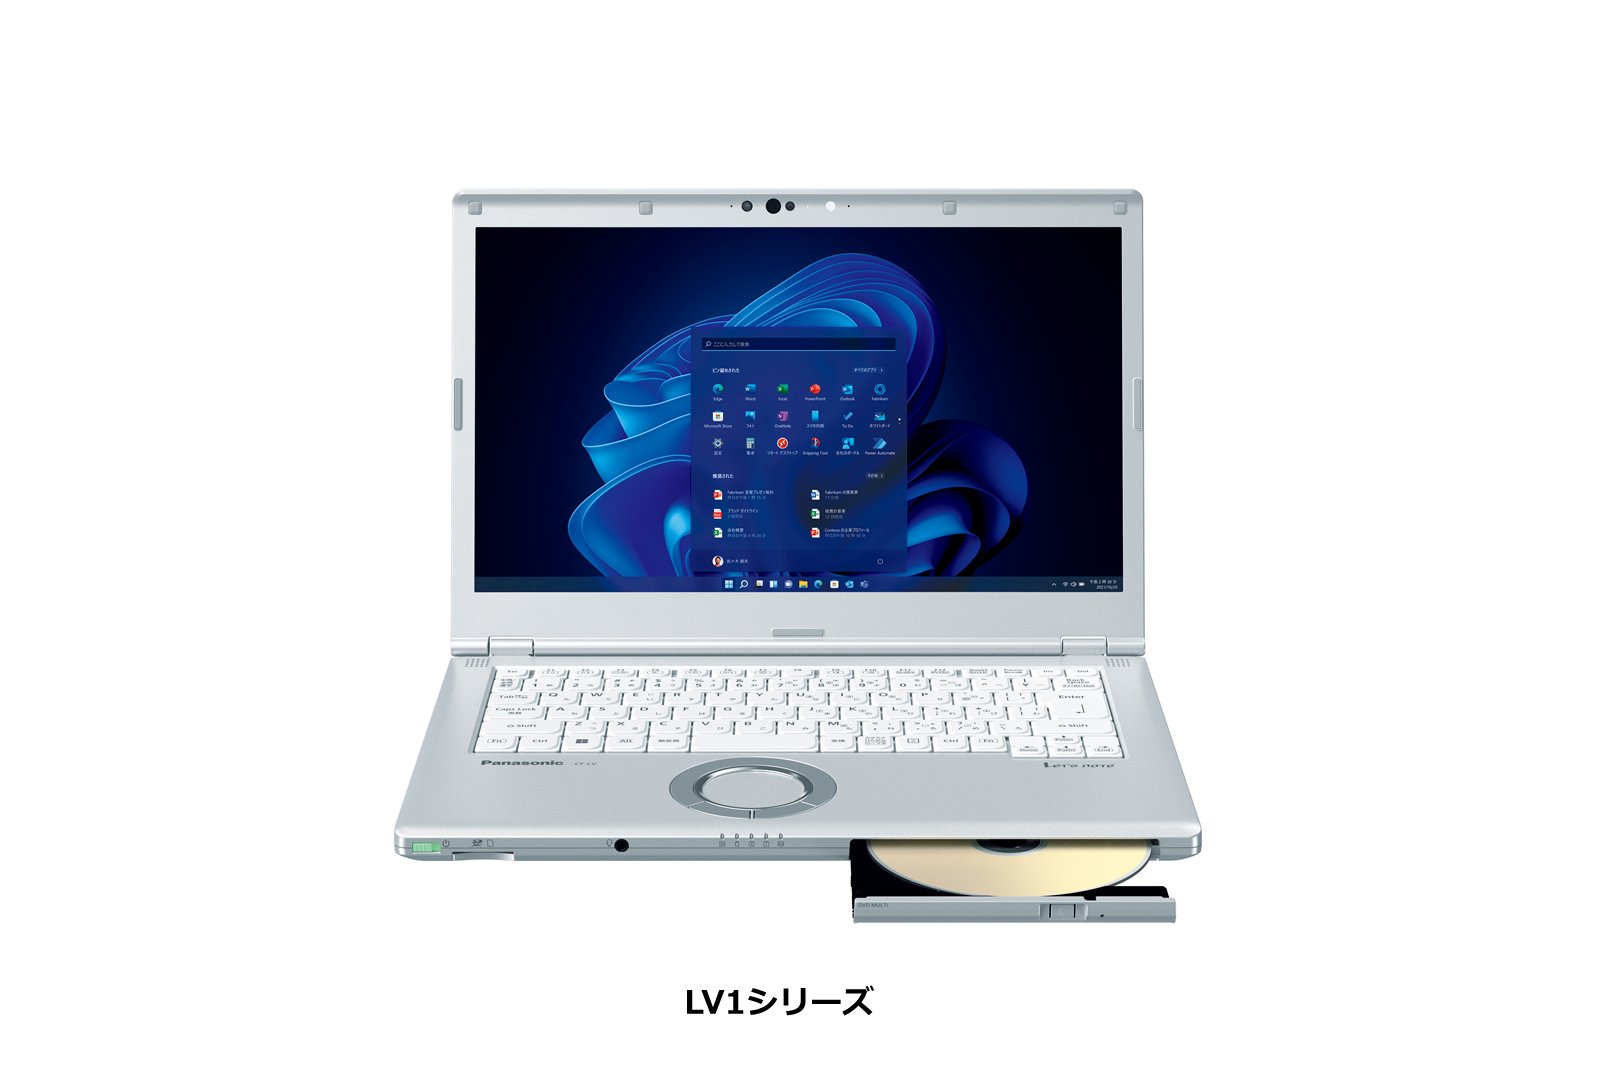 モバイルパソコン LV1シリーズ正面1